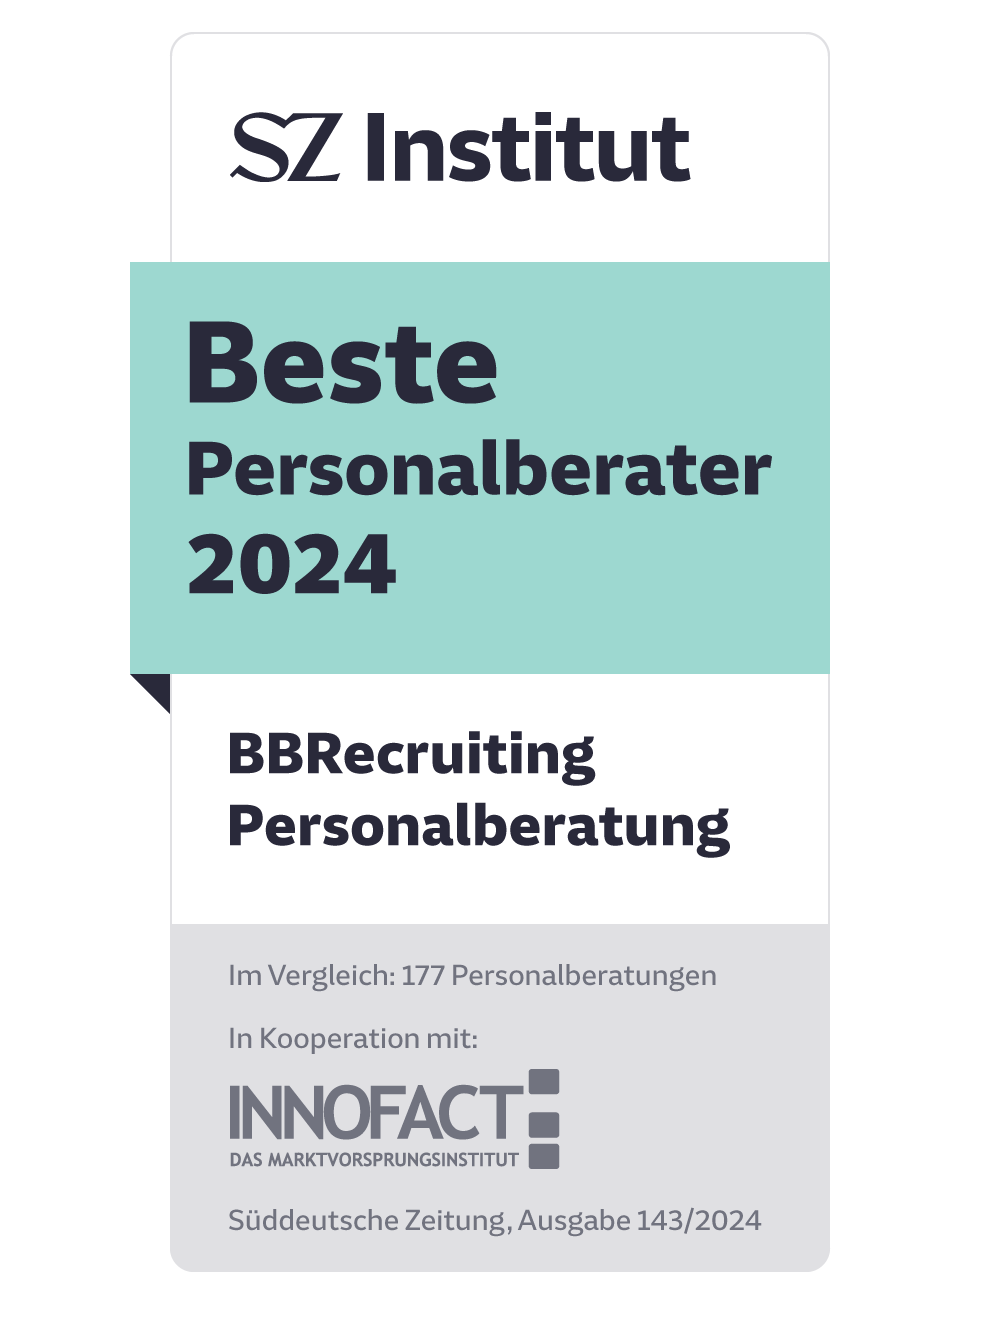 BBRecruiting Personalberatung unter den Top Ten bei„Beste Personalberater 2024“ von SZ Institut und Innofact